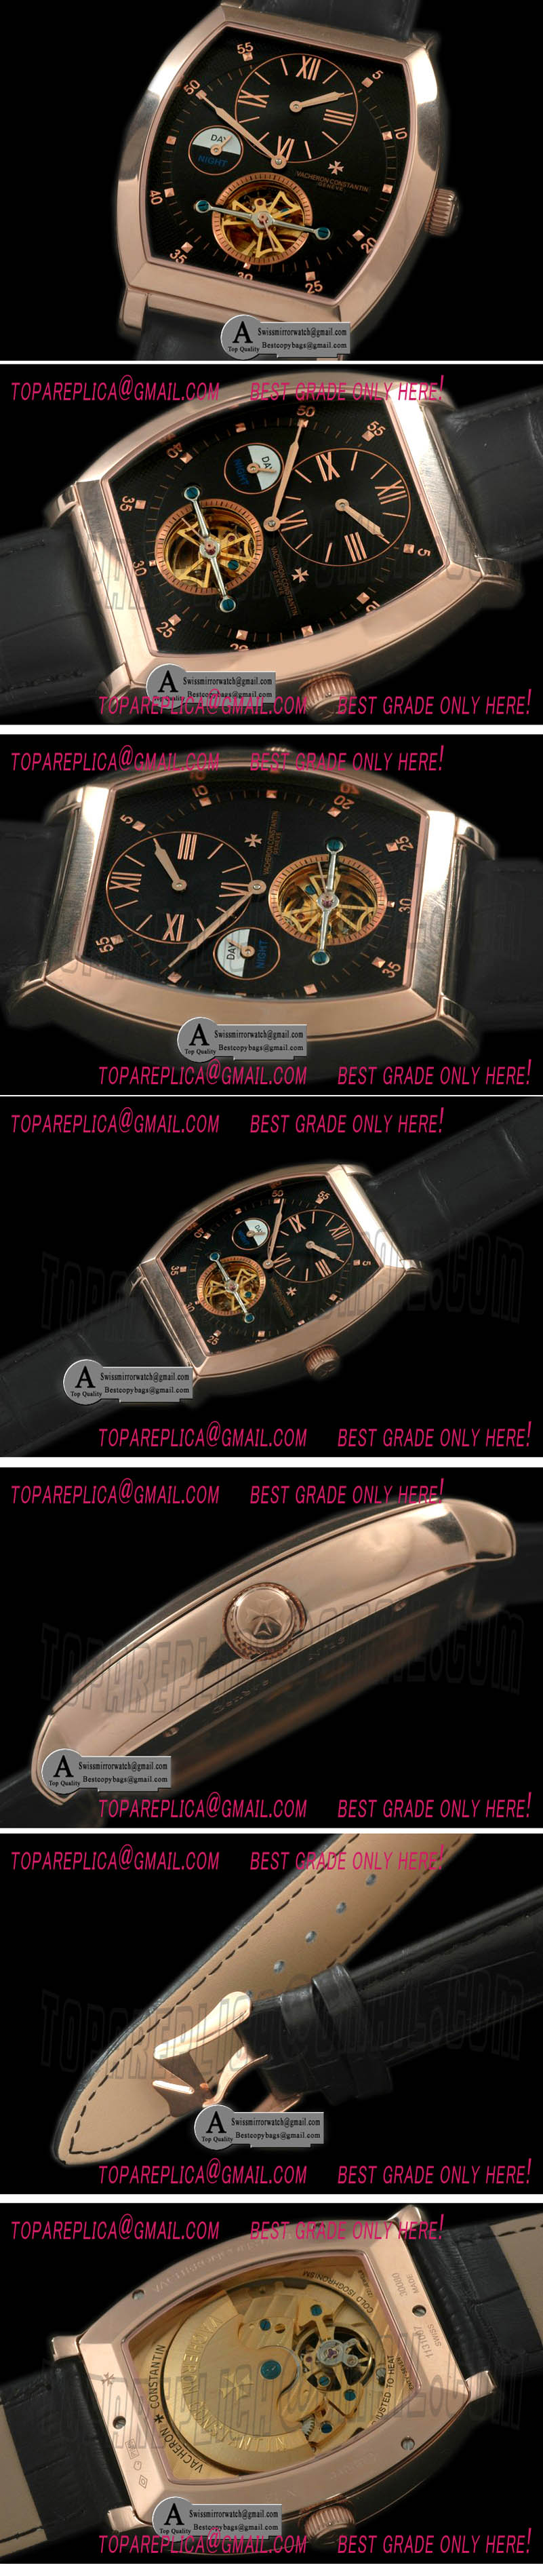 Vacheron Constantin Malte Regulator Tourbillon Rose Gold/Leather Black Dial Asian 2813 Replica Watches